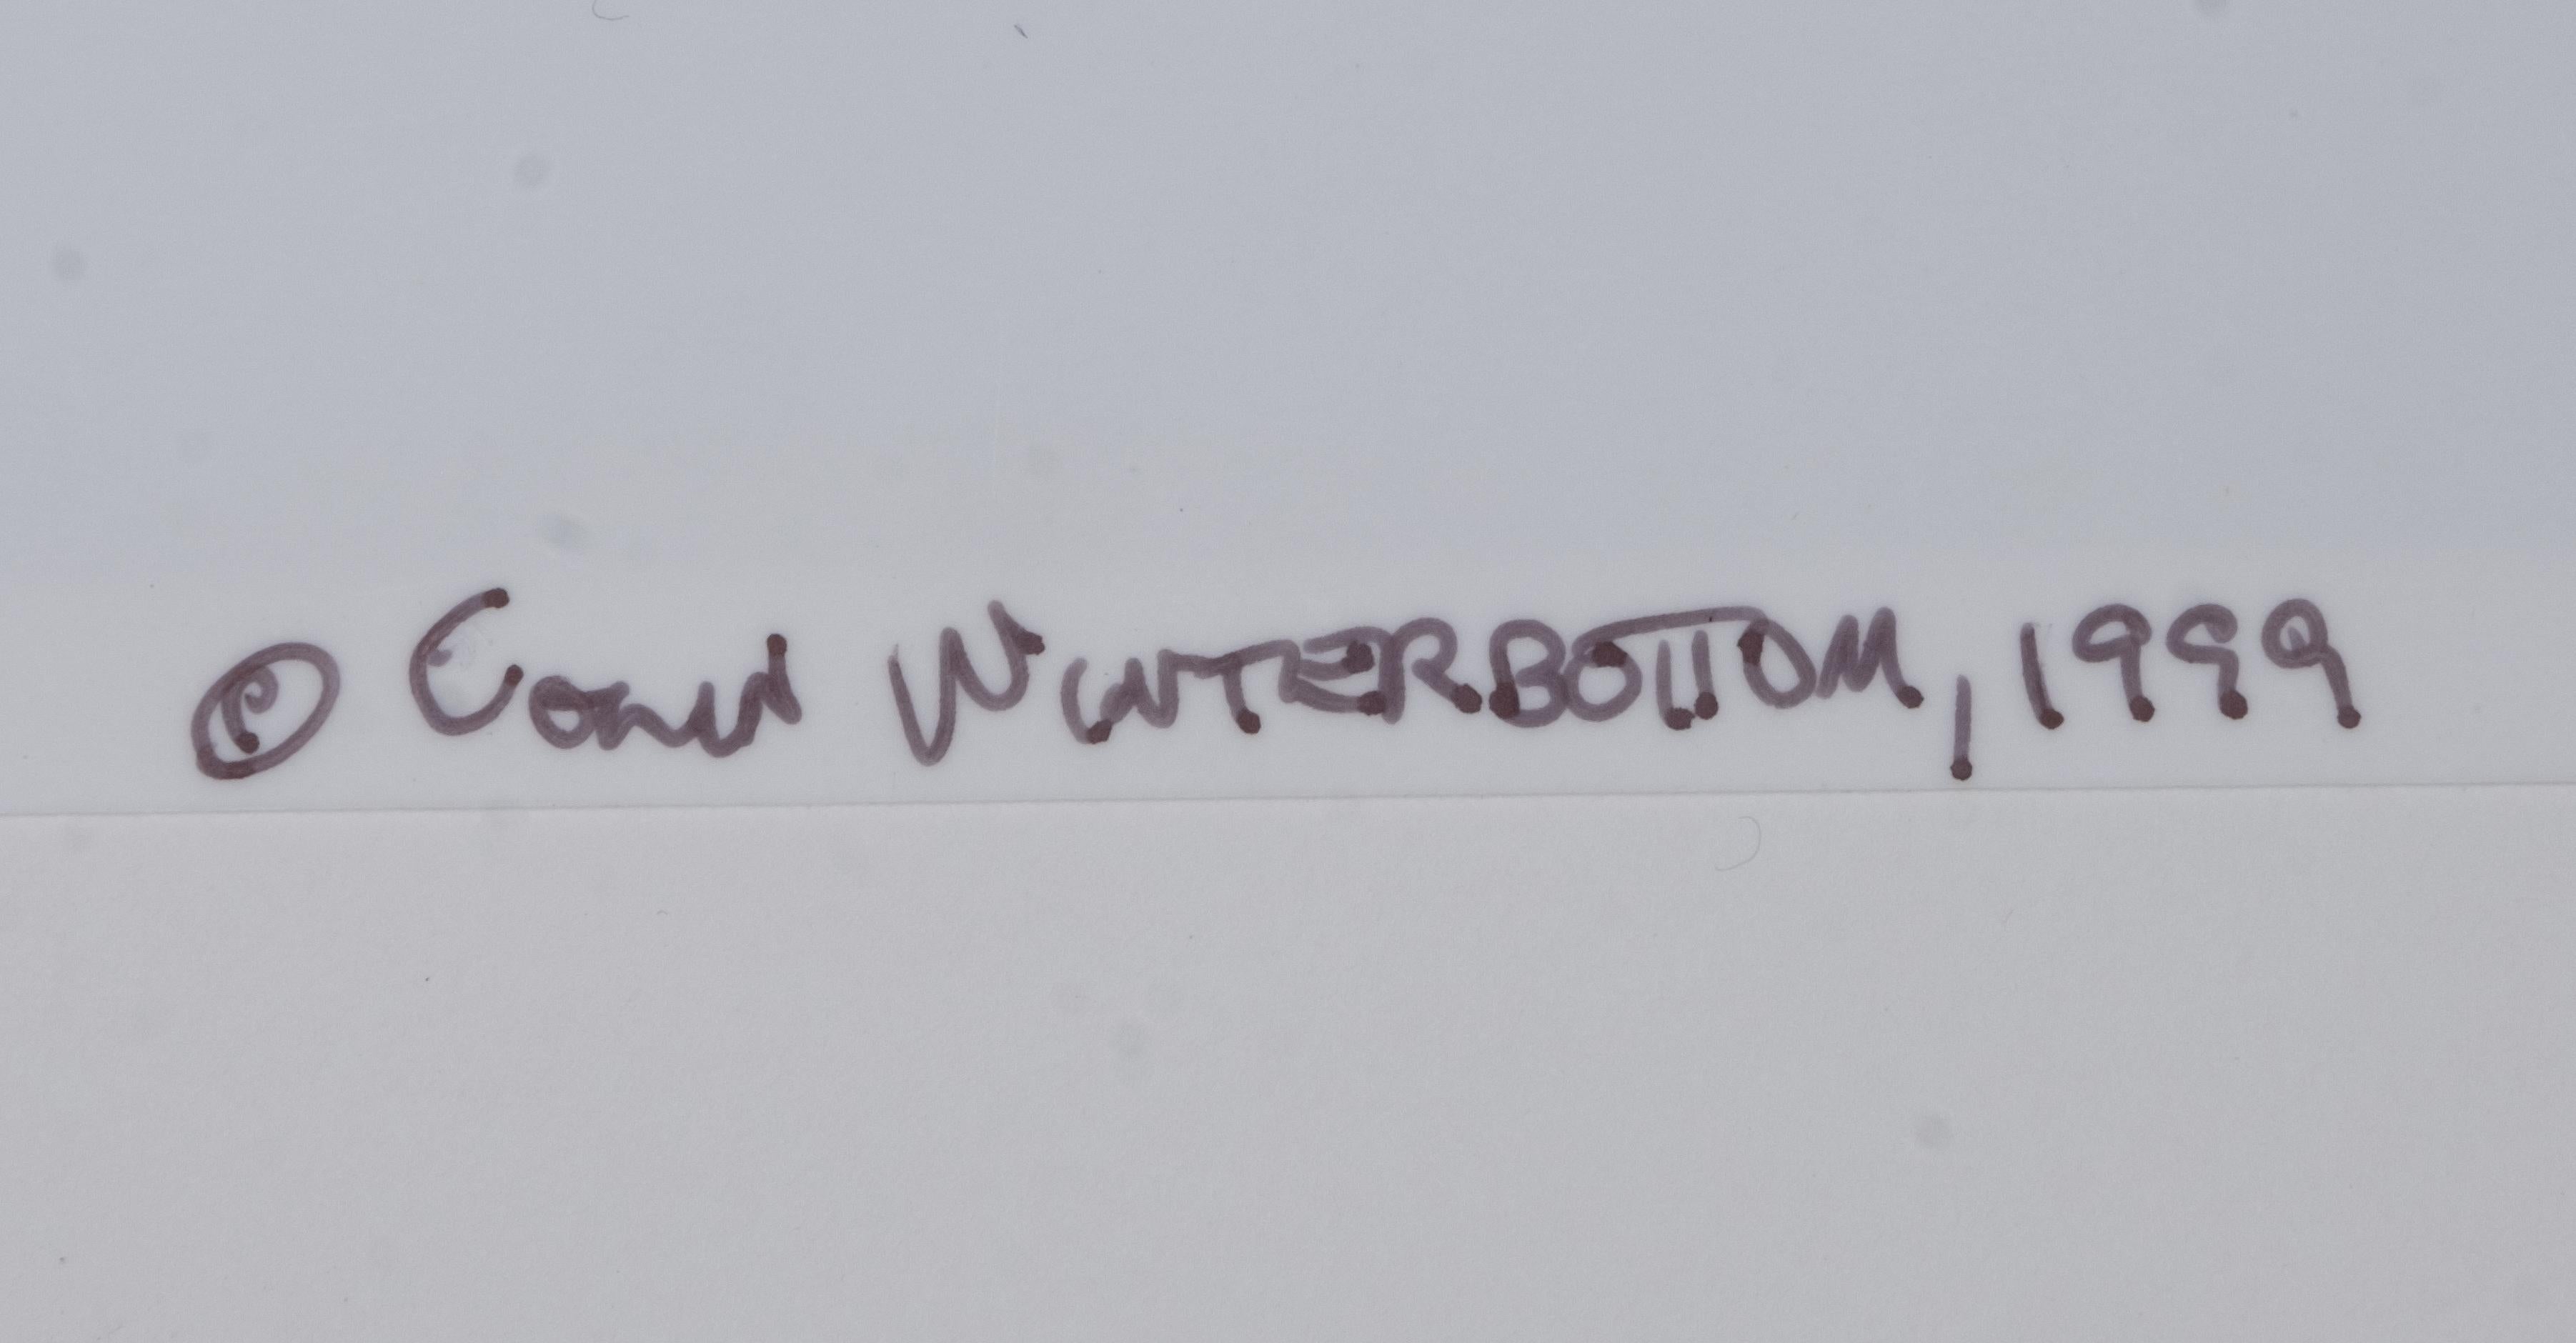 Papier Impression photographique du Washington Monument signée Colin Winterbottom, 1999